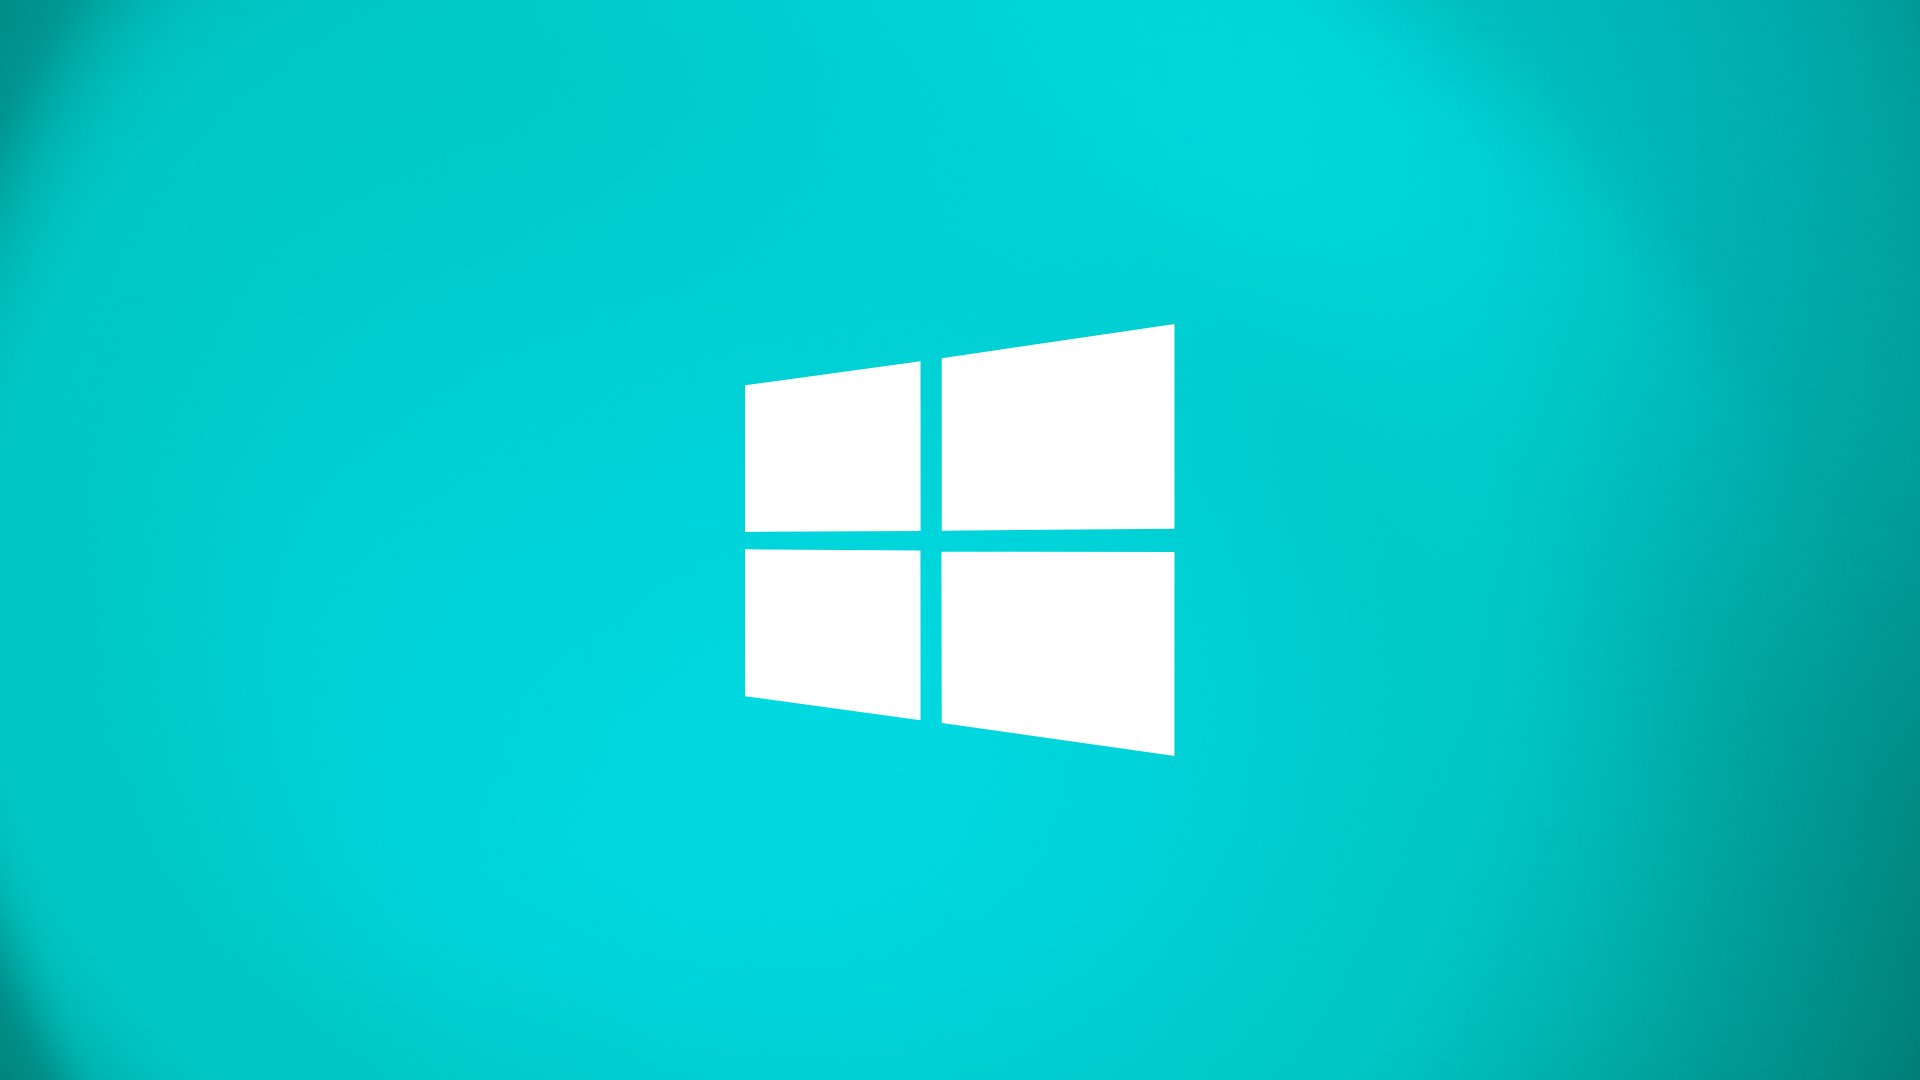 Microsoft revela grande atualização do Windows 11 – News Center